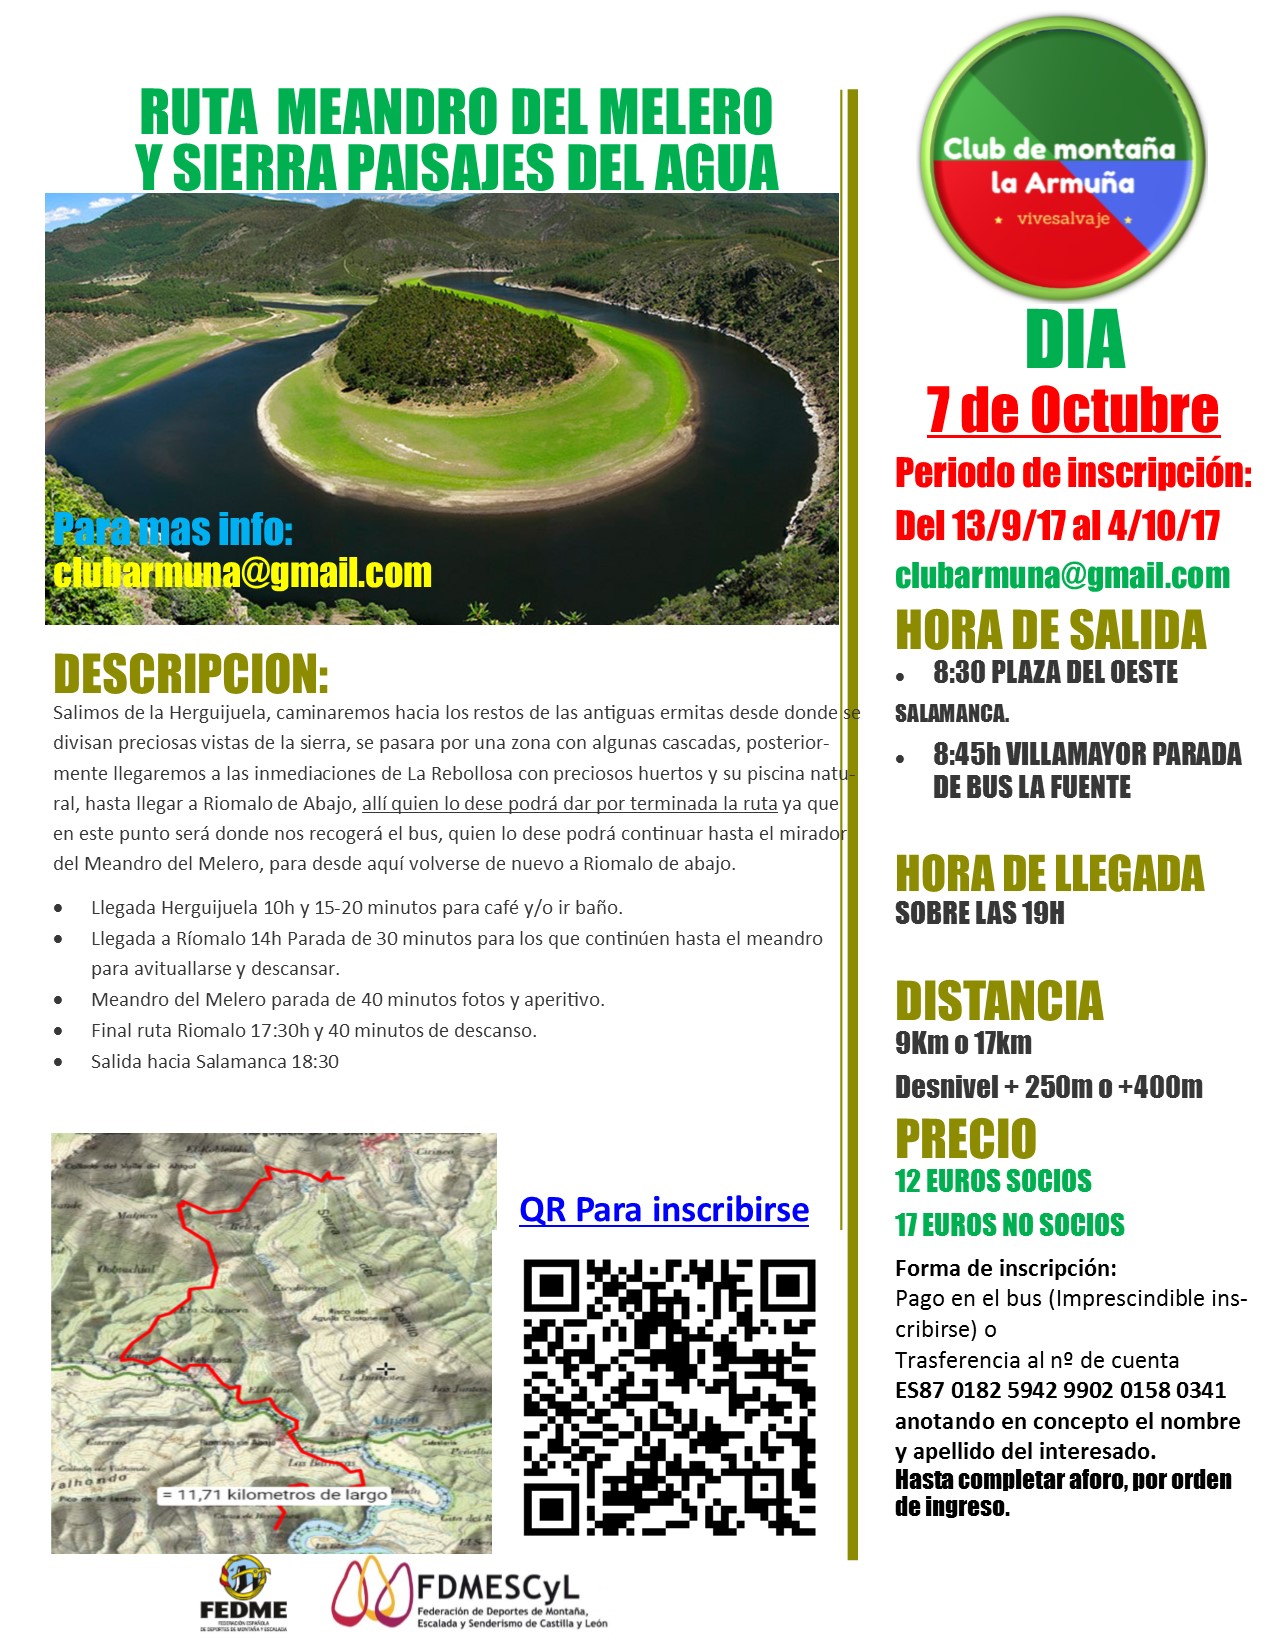 Ruta Meandro Melero y Sierra Paisajes del Agua La Armuña Octubre 2017